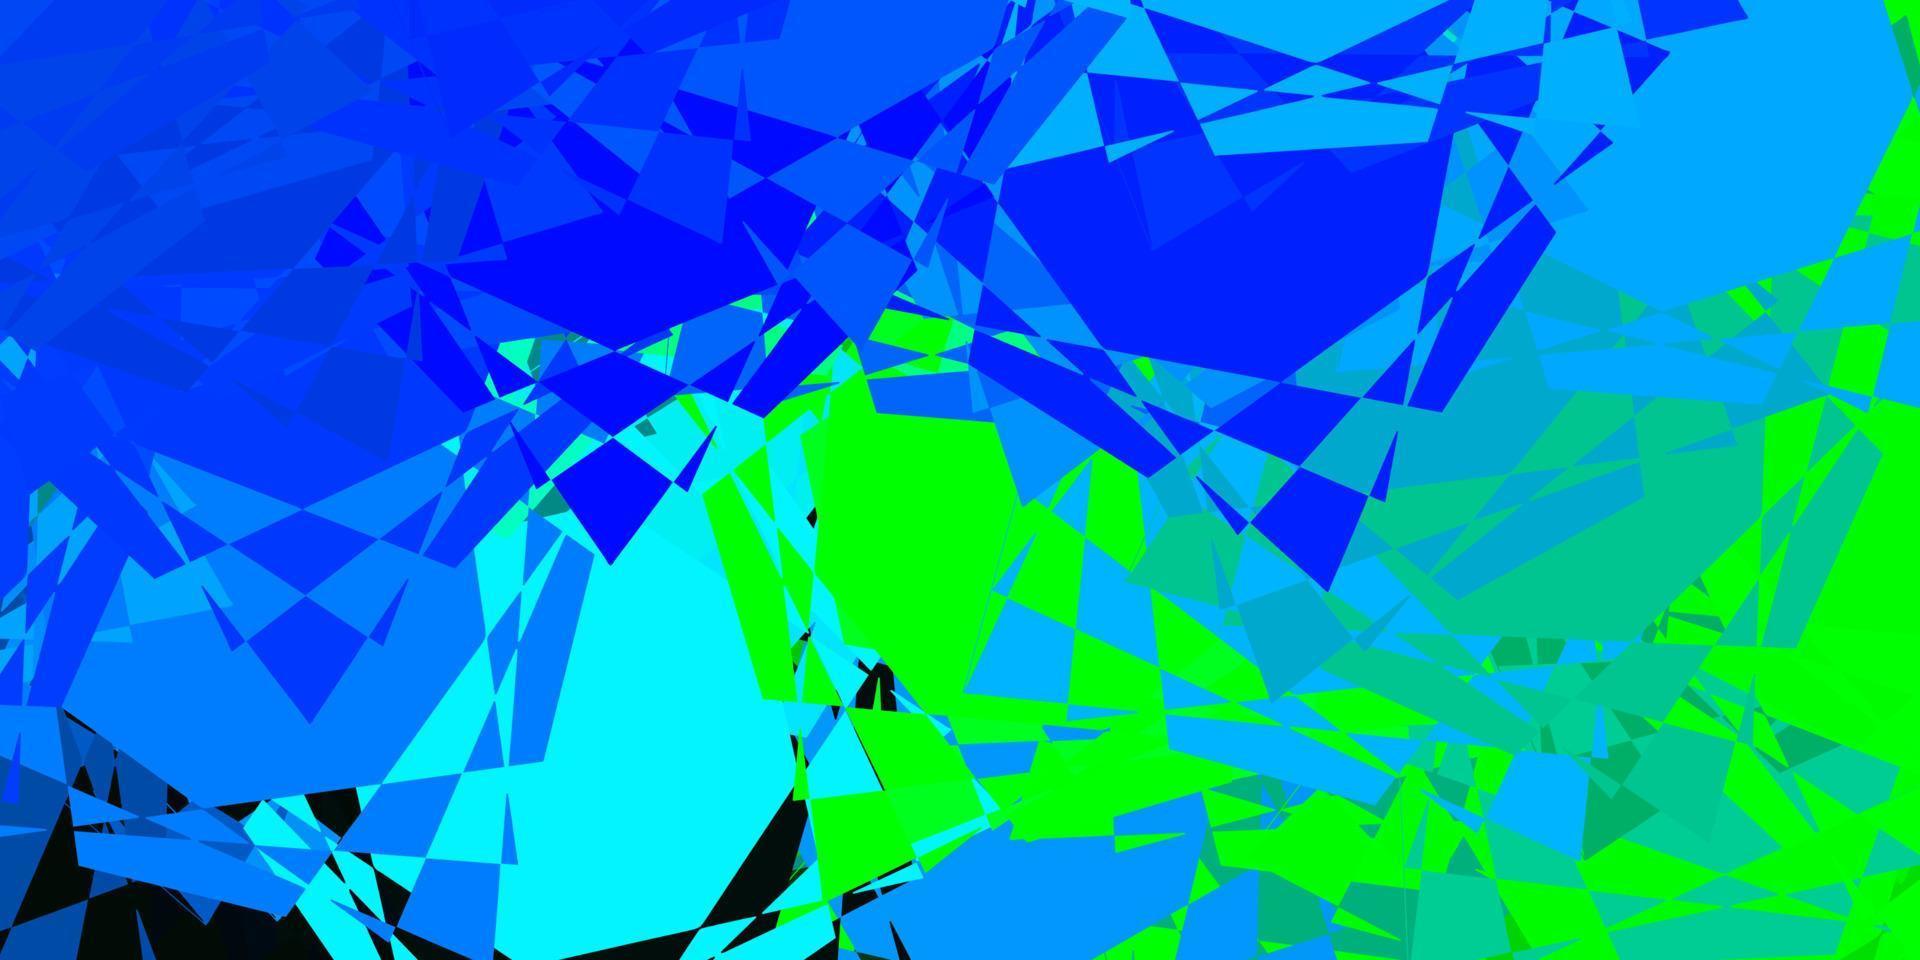 patrón de vector azul claro, verde con formas poligonales.